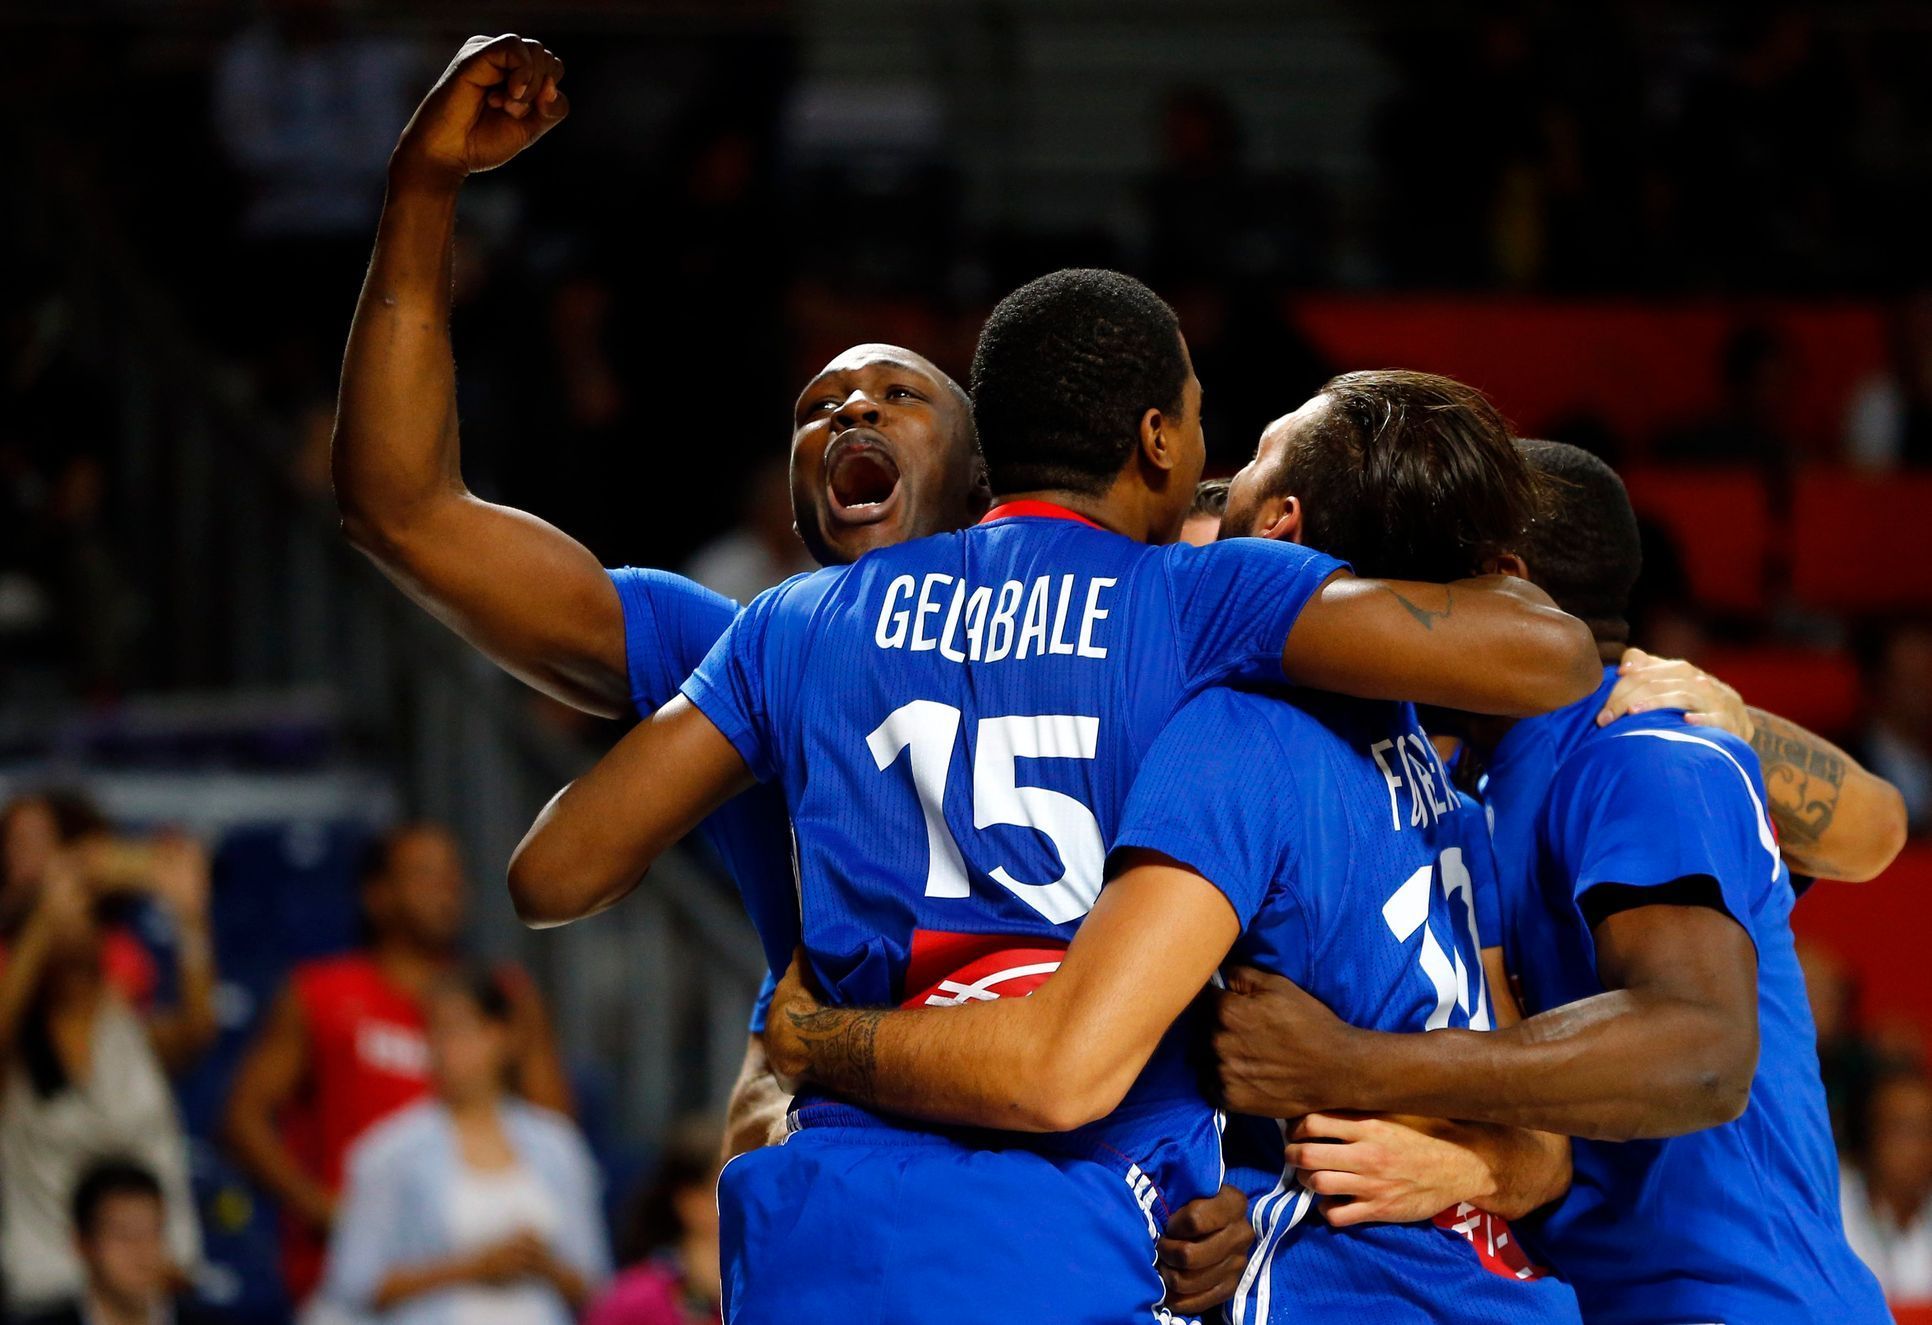 MS v basketbalu 2014: Francouzi slaví bronz